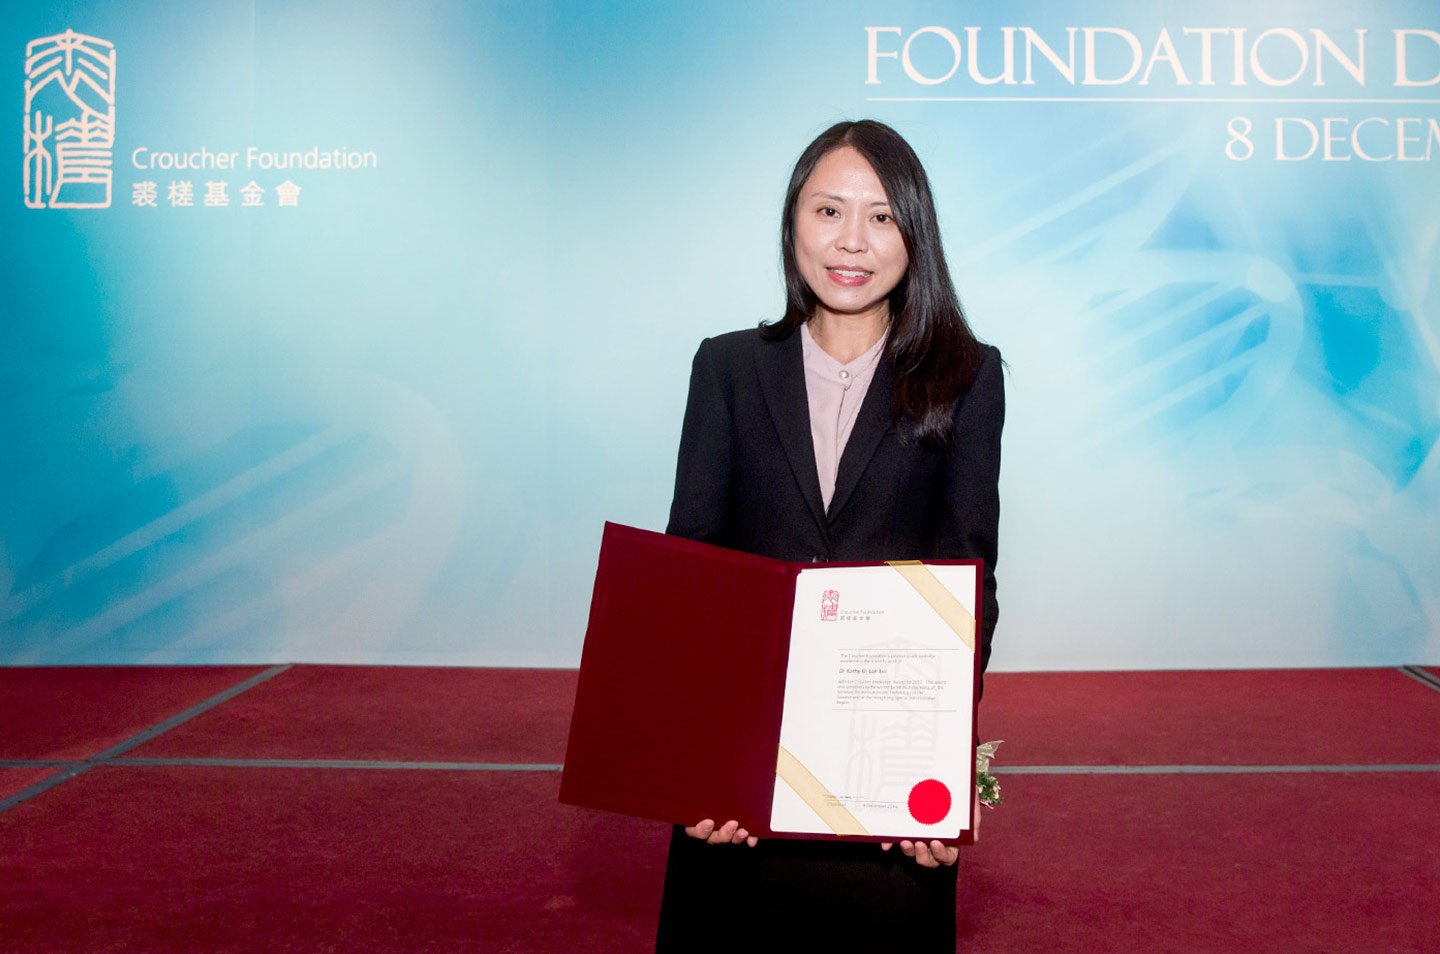 呂教授獲裘槎基金會授予2017年度「前瞻科研大獎」，以表揚她在國際科學界的卓越成就